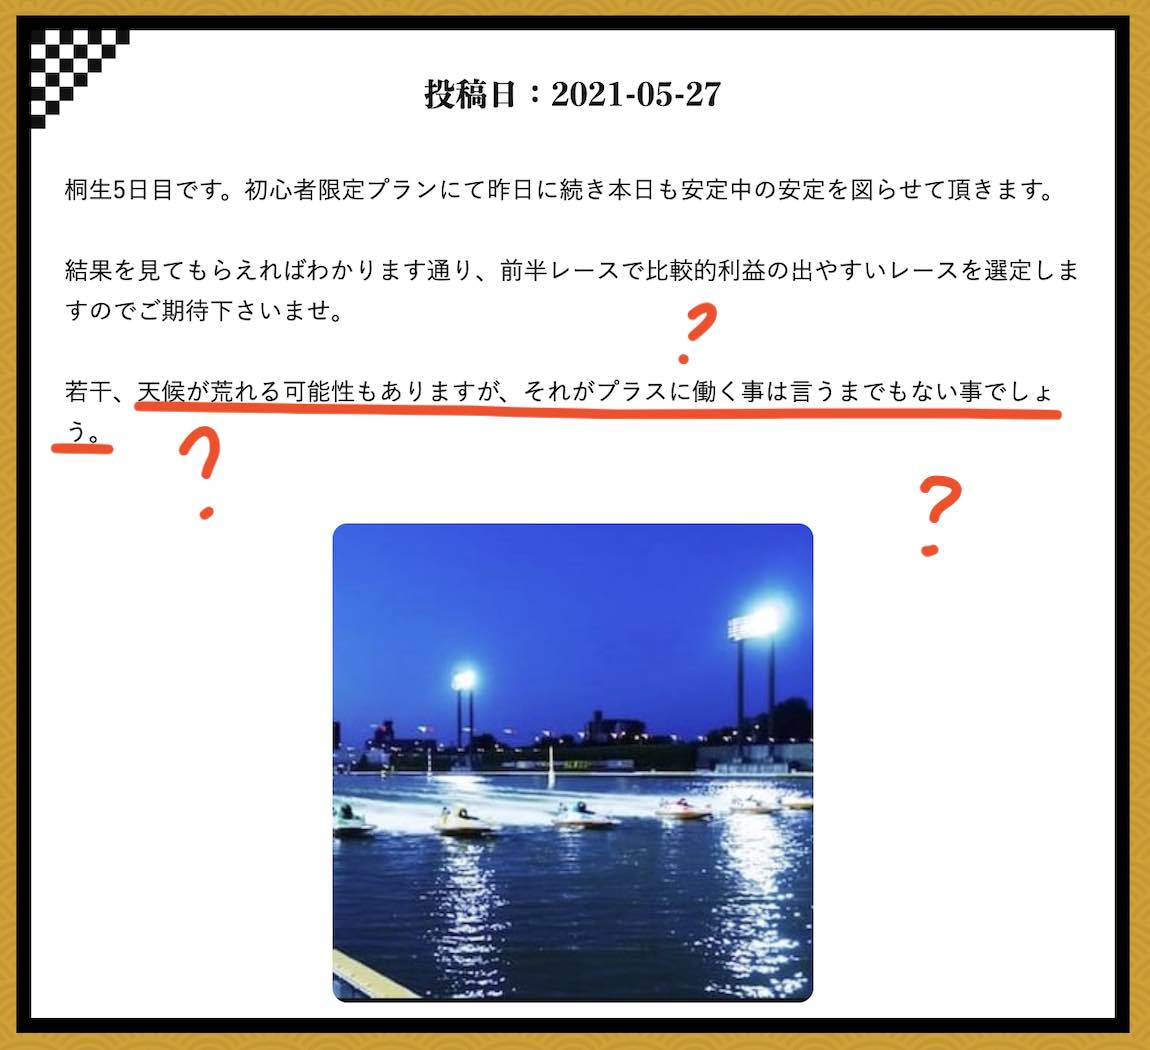 万舟JAPAN(万舟ジャパン)という競艇予想サイト(ボートレース予想サイト)の2021/05/27の情報部ツイートにツッコミ